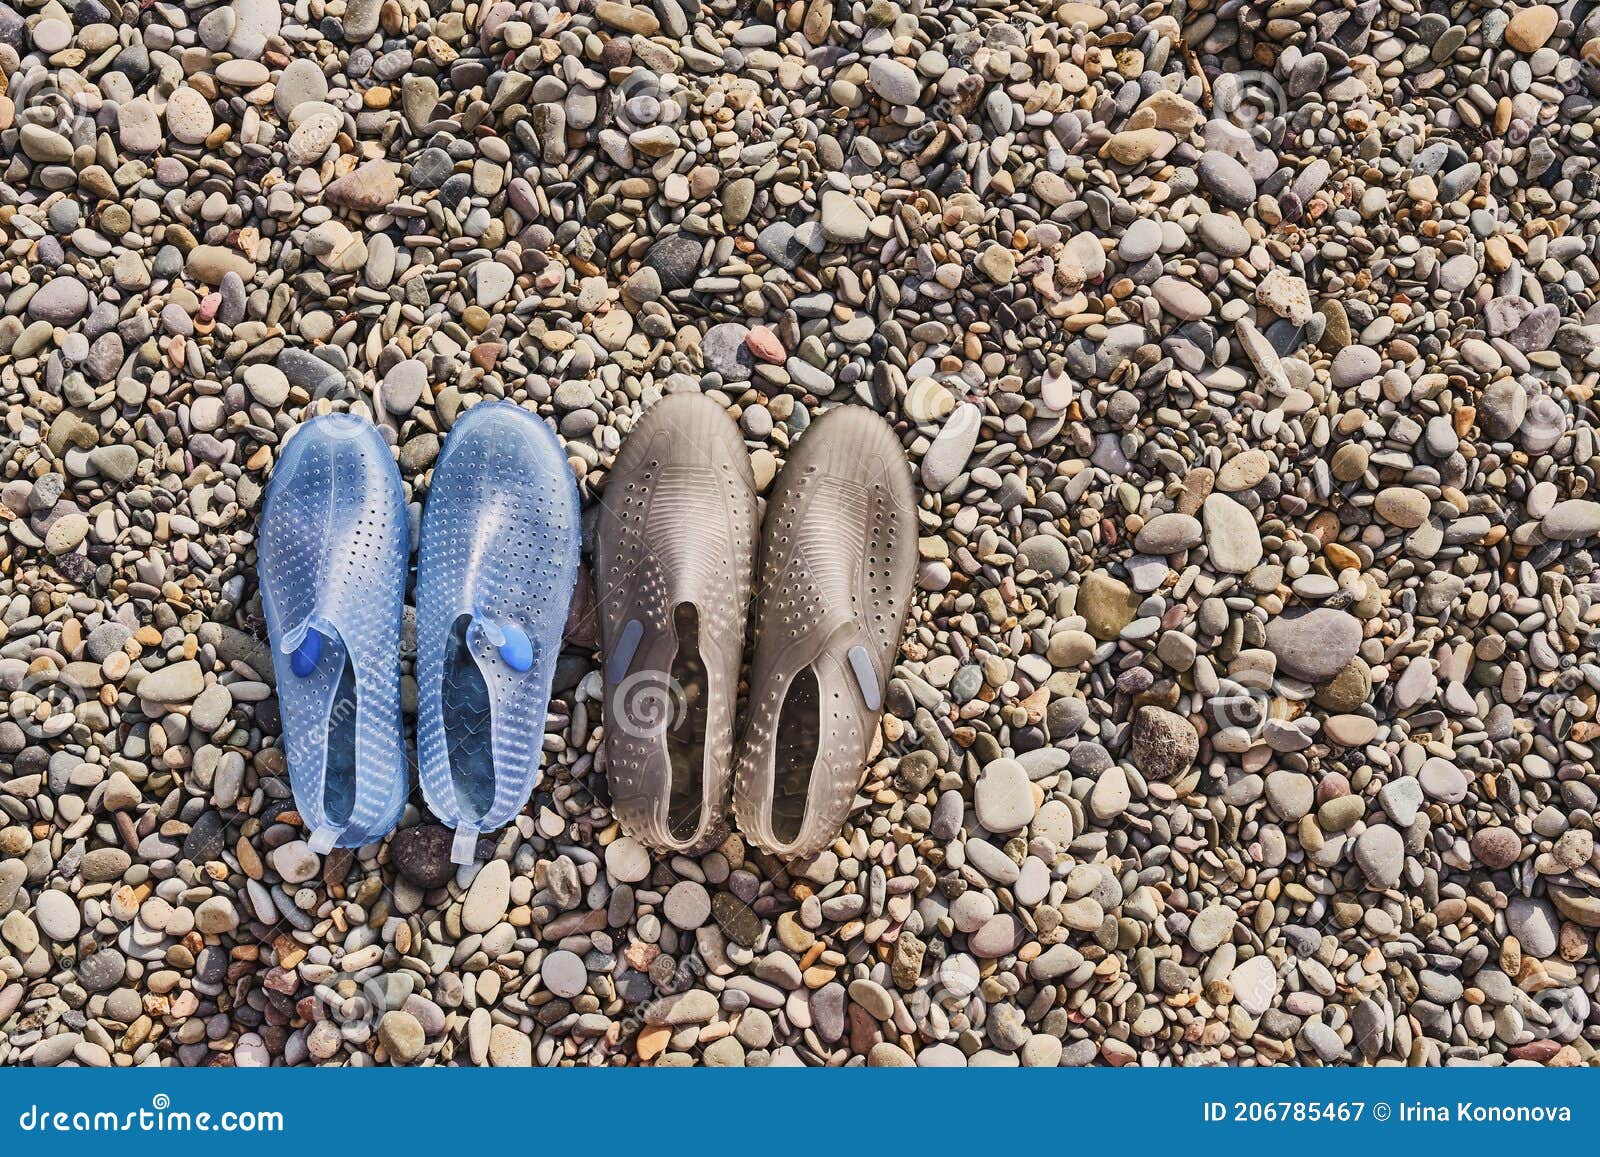 Las Mujeres De Color Azul Caucho Y Las Zapatillas Menstruales Grises Para Nadar Una Playa De Piedras Imagen de archivo - Imagen de verano, color: 206785467